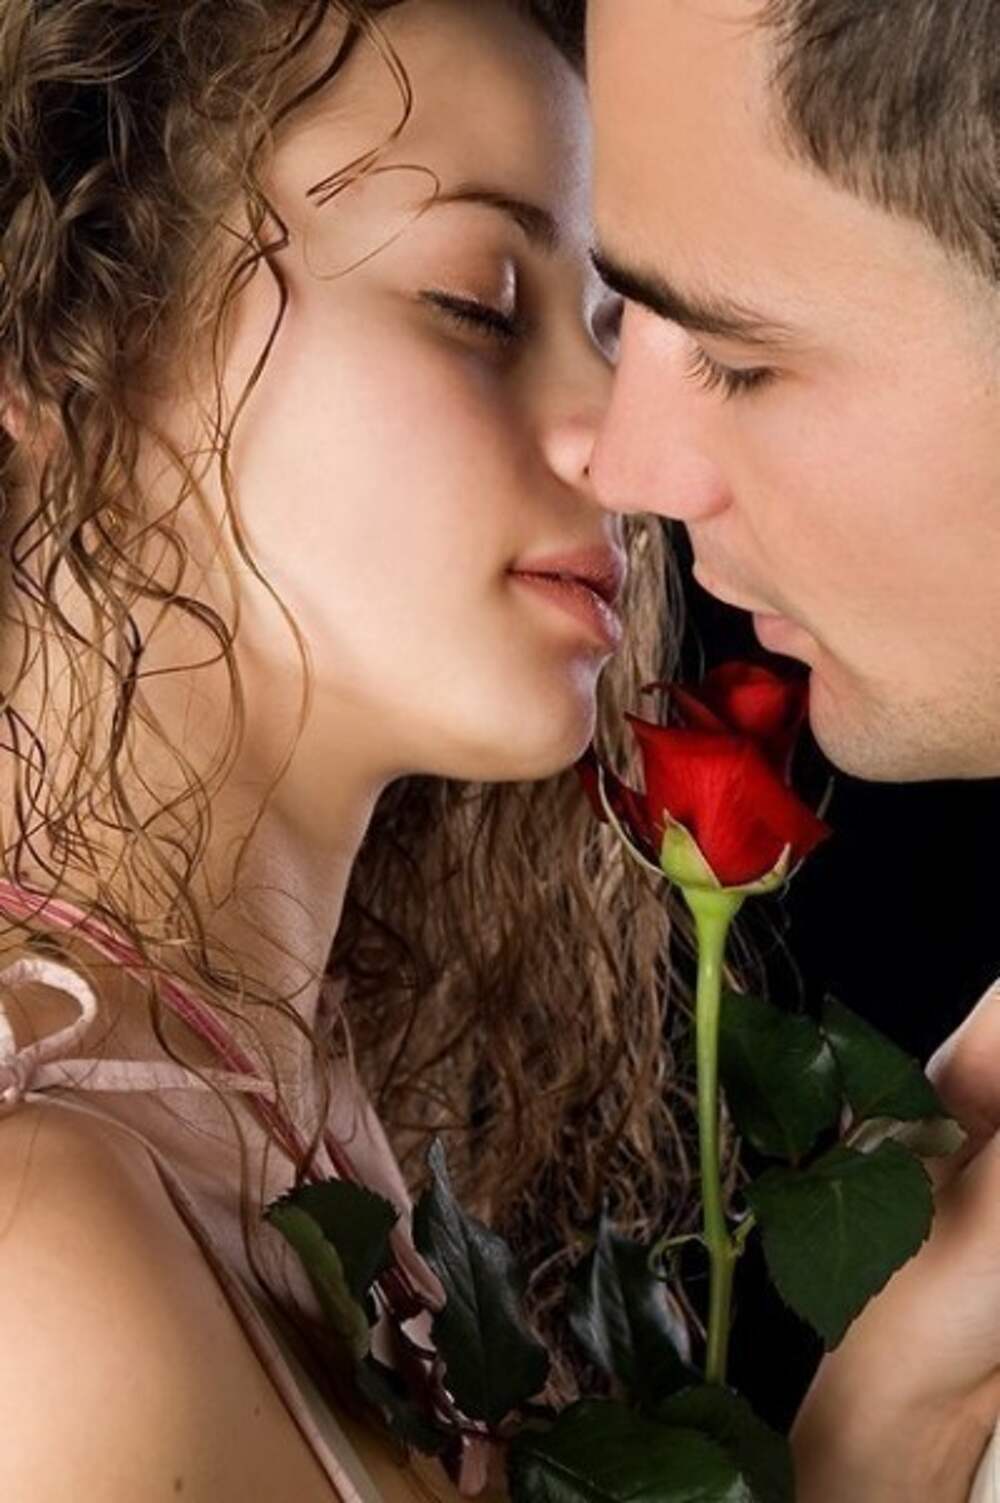 Любить насчет. Красивый поцелуй. Романтическая женщина. Романтичный поцелуй.